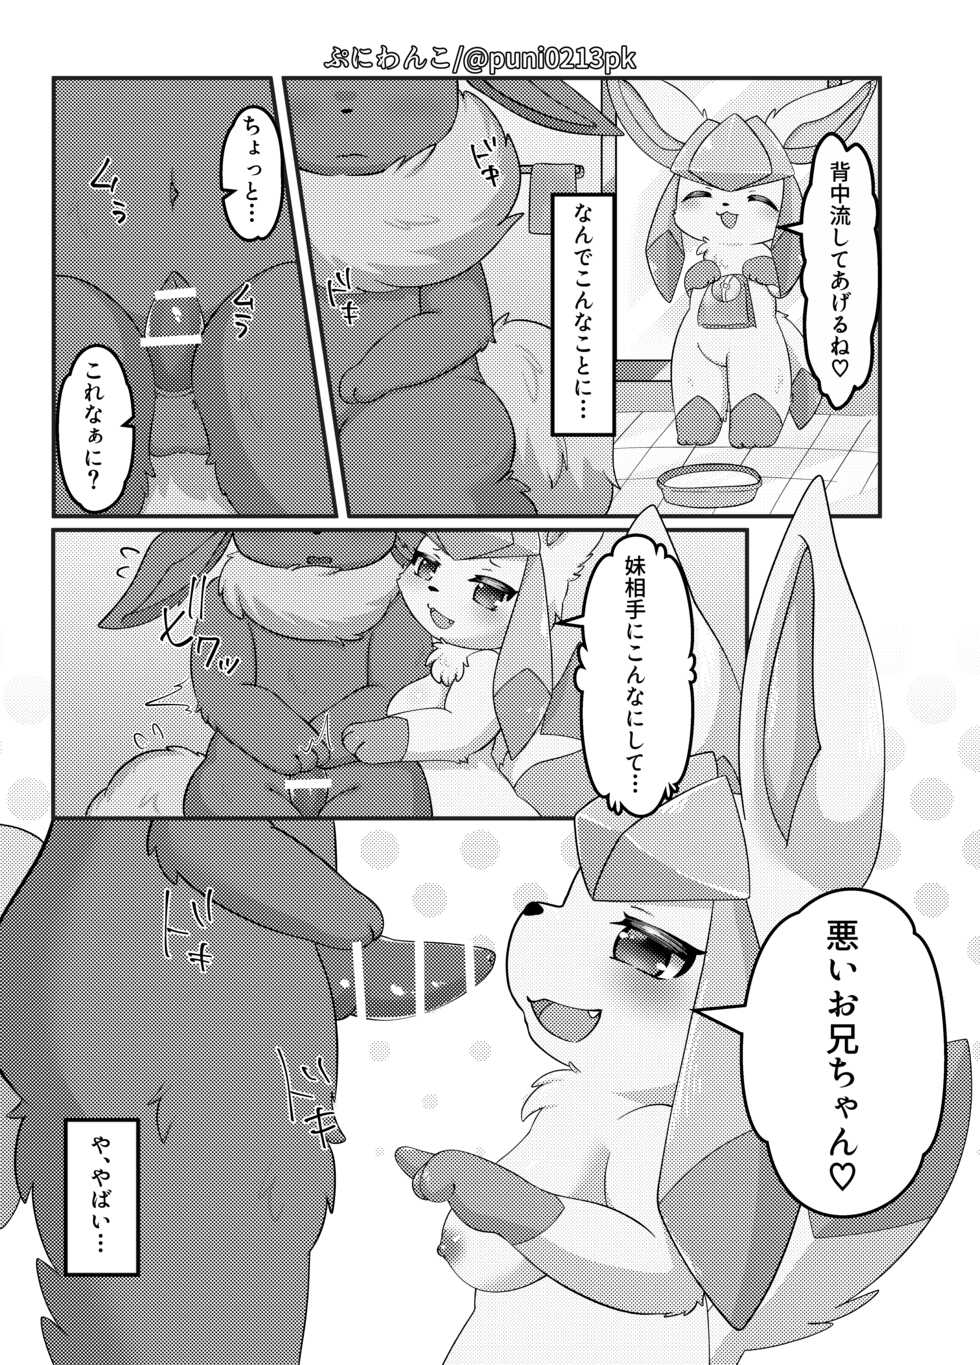 [ぷにわんこ] グレお風呂漫画 (ポケットモンスター) - Page 2